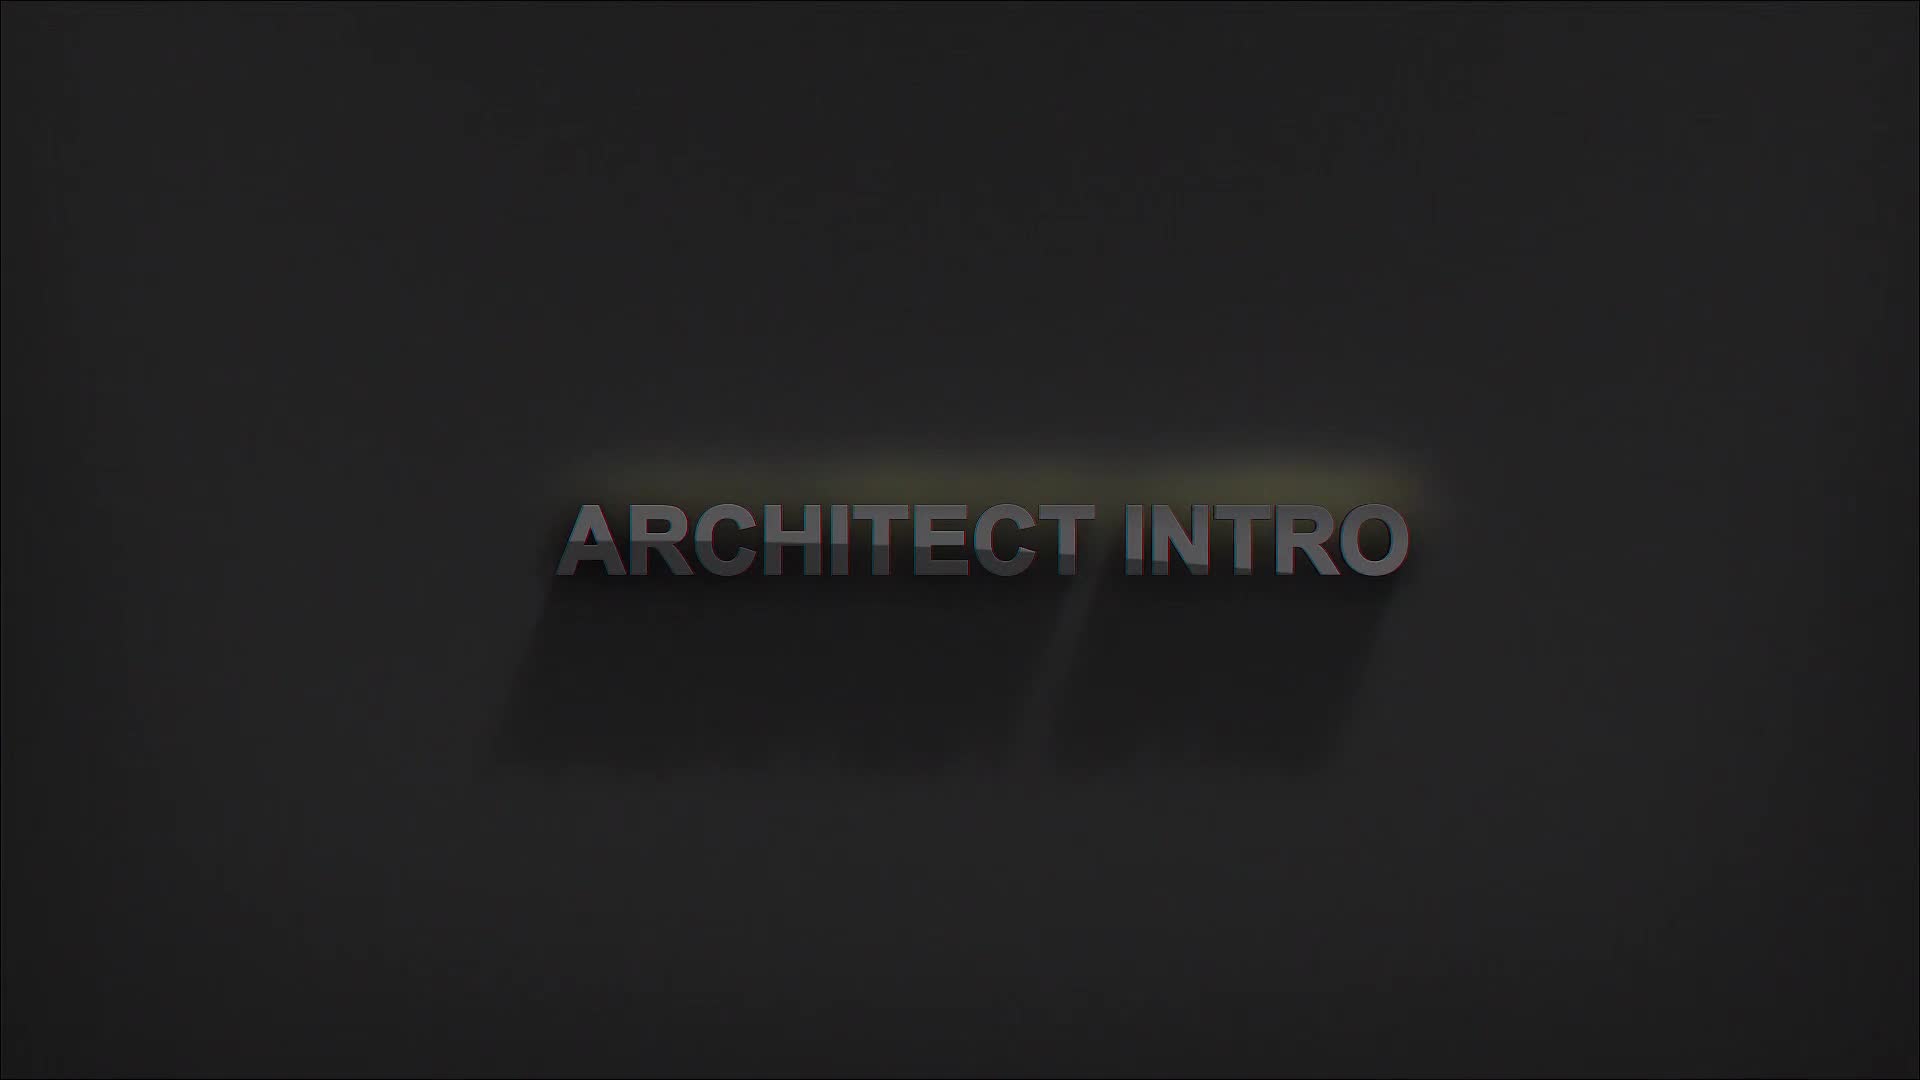 Architect Intro Videohive 30289475 Premiere Pro Image 9